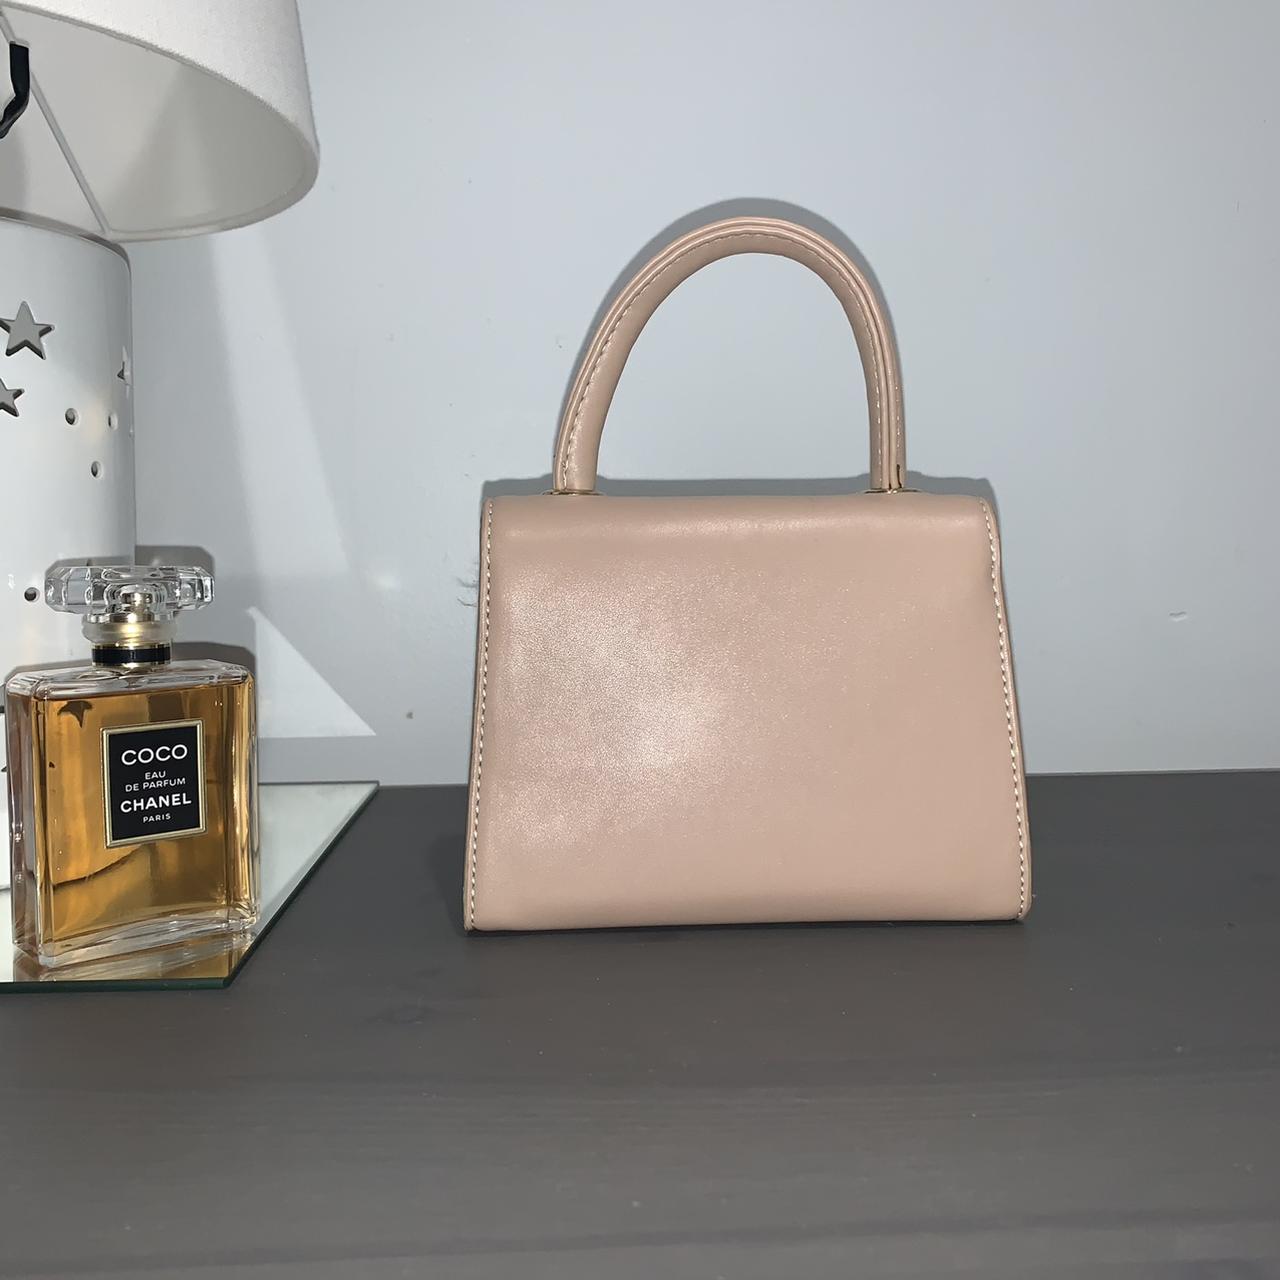 Product Image 2 - BRAND NEW
Moda Luxe mini purse
2